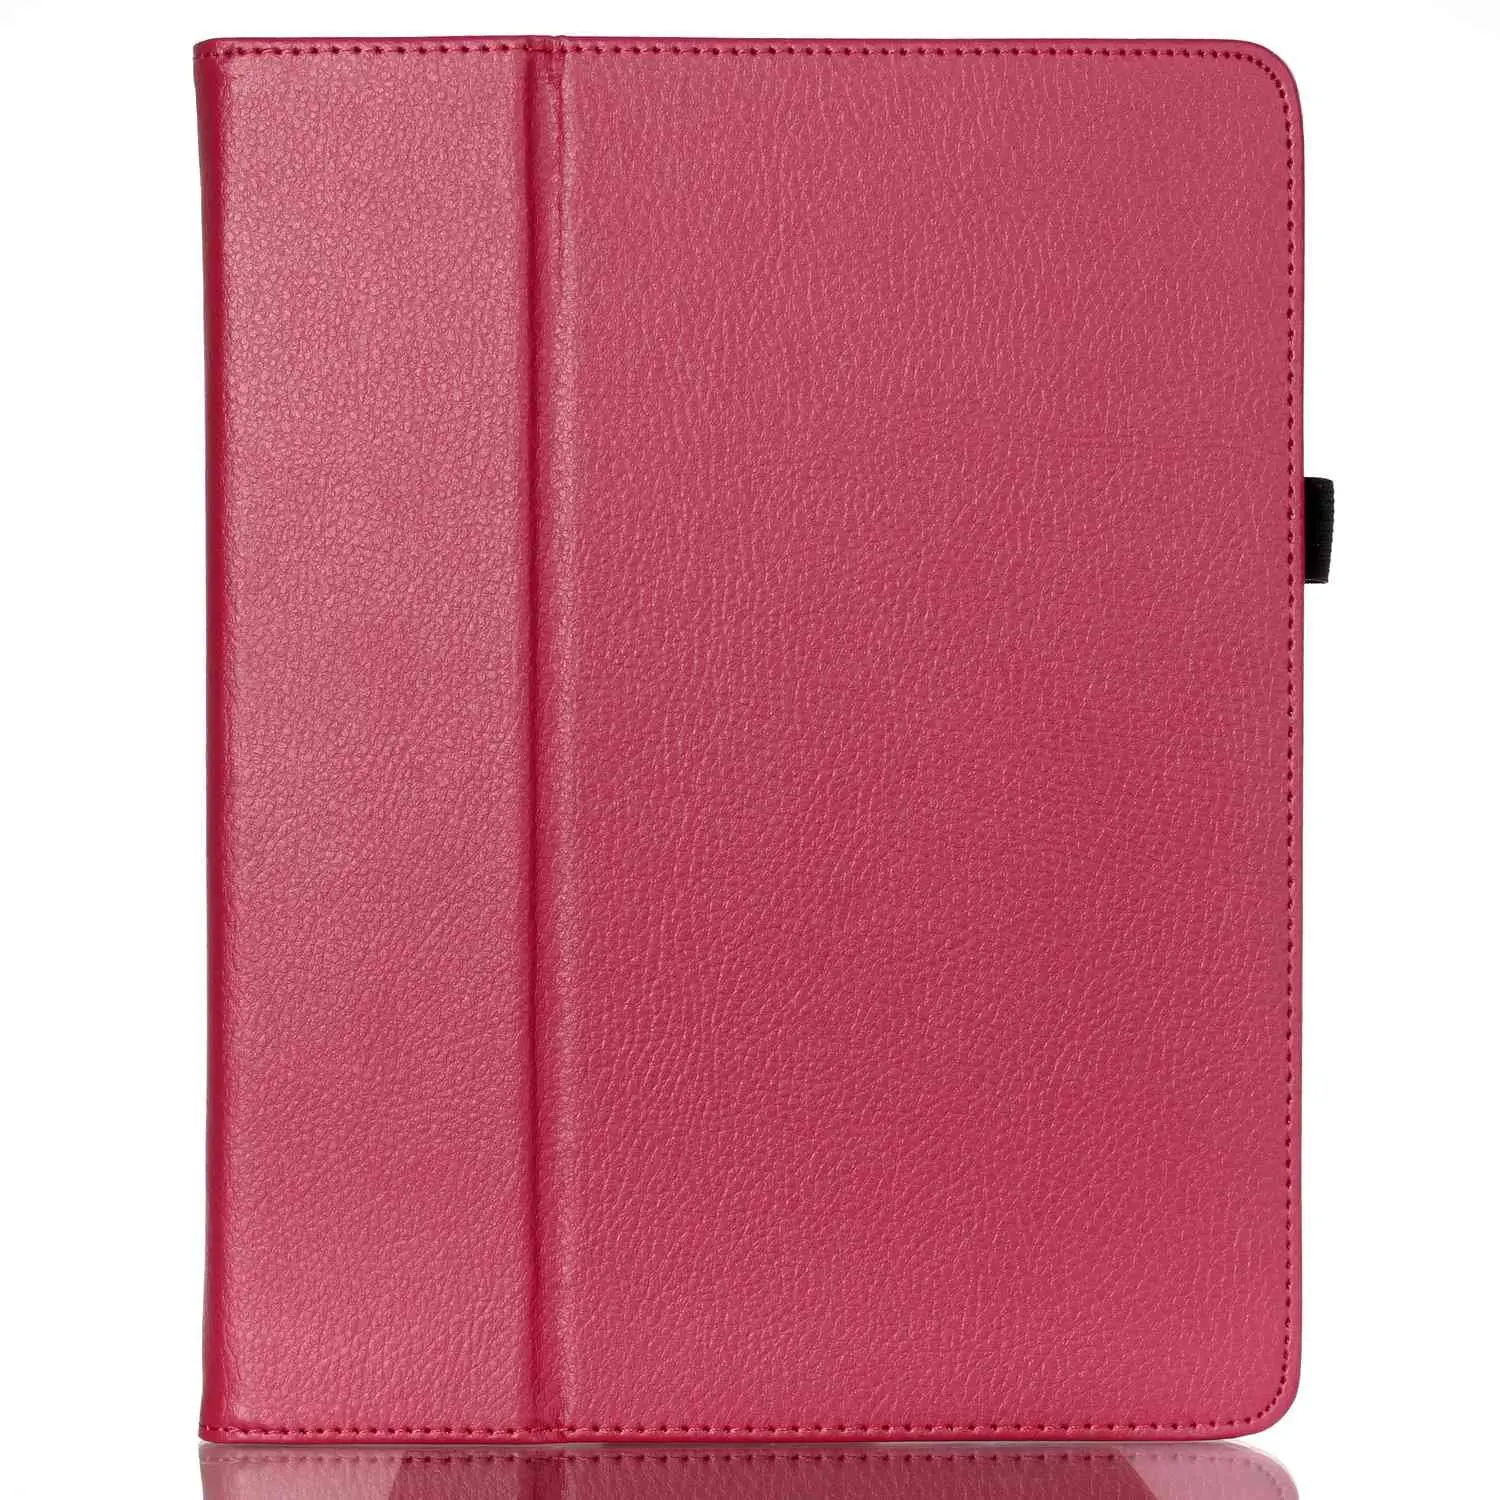 Для iPad 2/3/4 Чехол-портмоне с откидной крышкой Folio из искусственной кожи чехол для iPad 2/3/4 подставка держатель чехол s Slim Fit планшет A1395 A1396 A1430 - Цвет: for iPad 2 3 4 rose